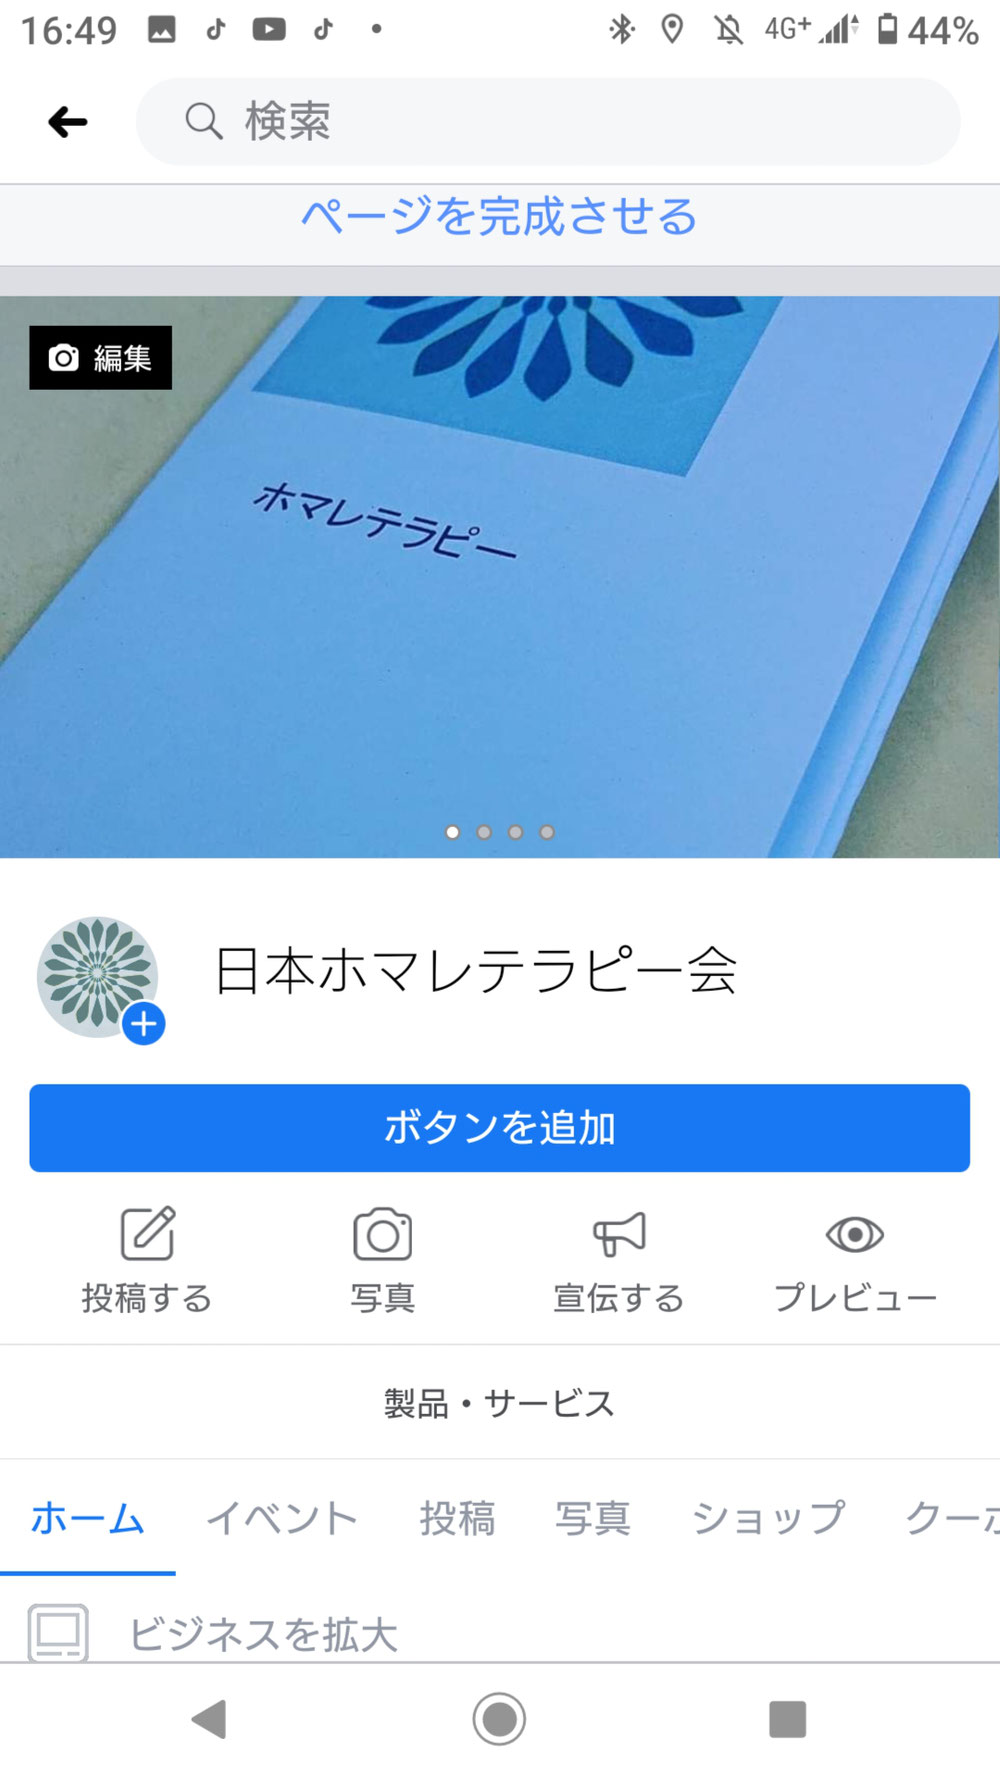 Facebookの日本ホマレテラピー会のページです。是非ご覧ください。